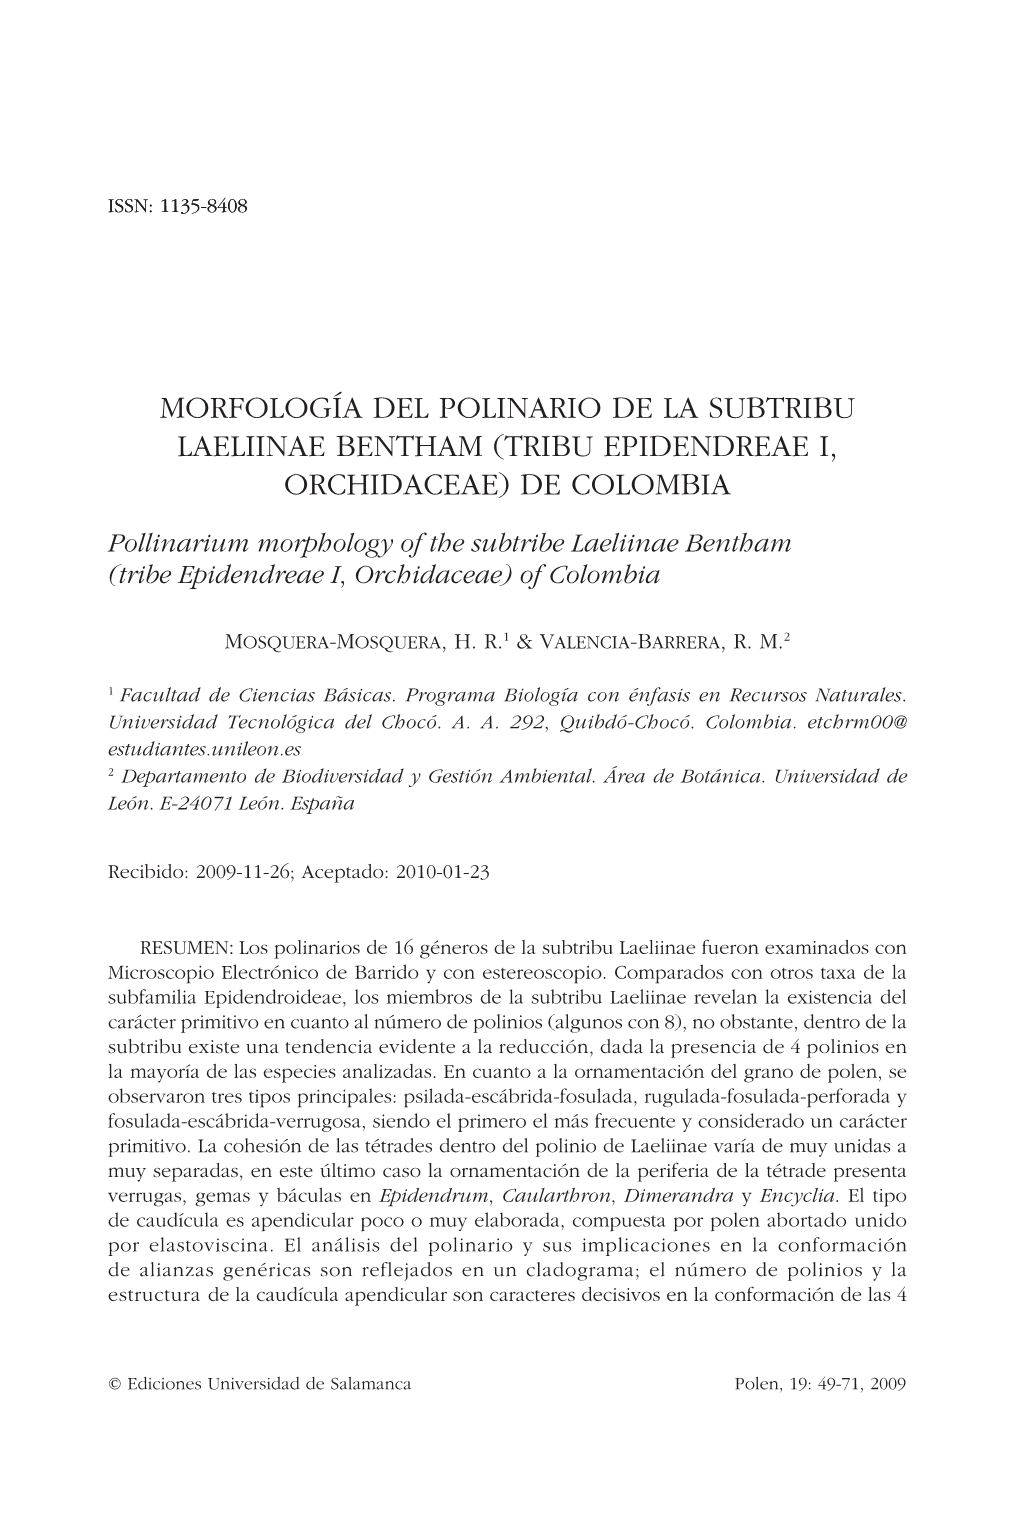 Morfología Del Polinario De La Subtribu Laeliinae Bentham (Tribu Epidendreae I, Orchidaceae) De Colombia